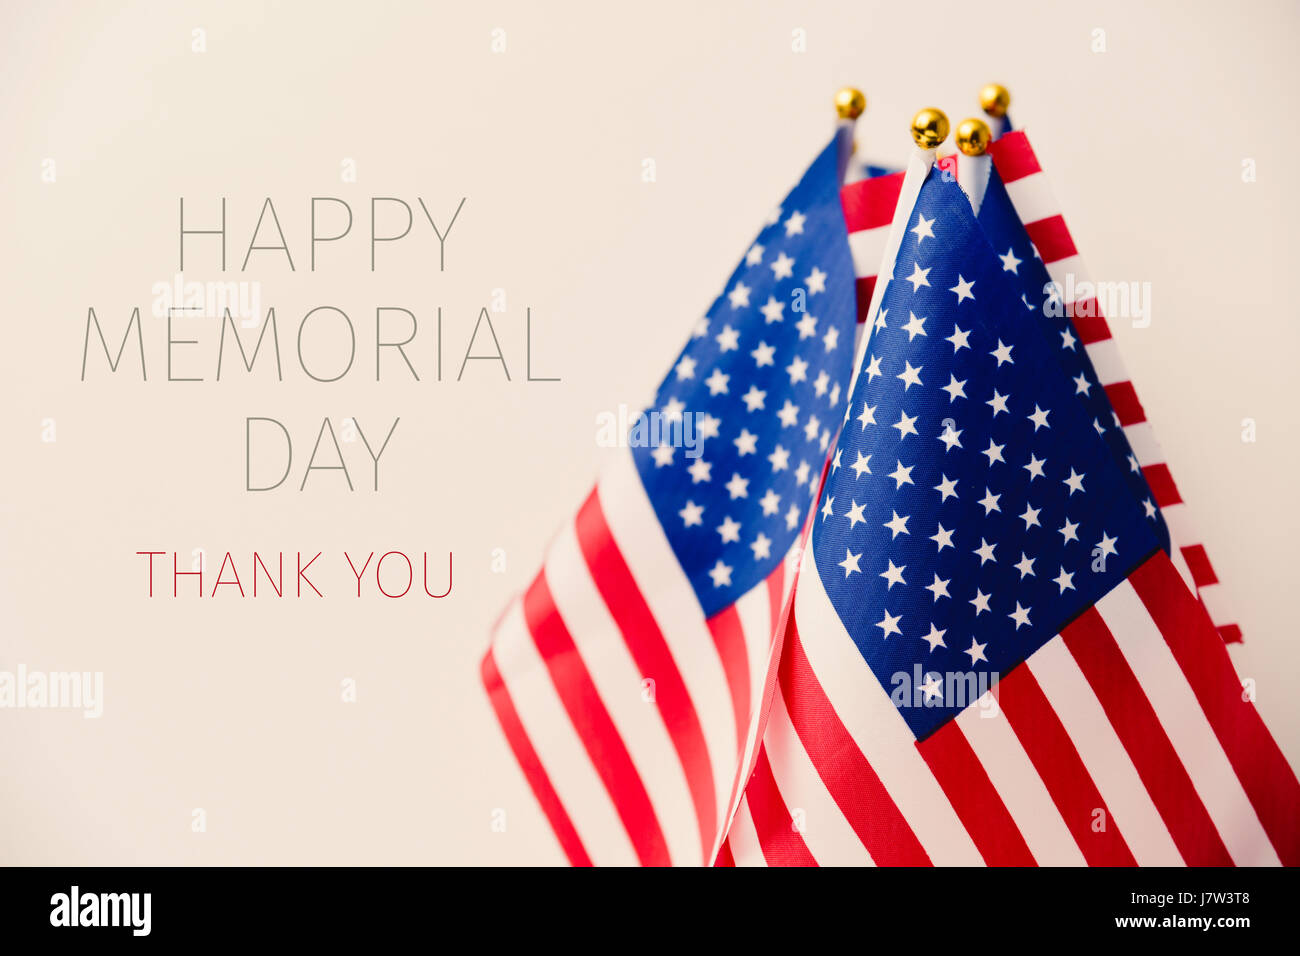 Il testo happy memorial day, grazie e alcune bandiere degli Stati Uniti contro un sfondo beige Foto Stock